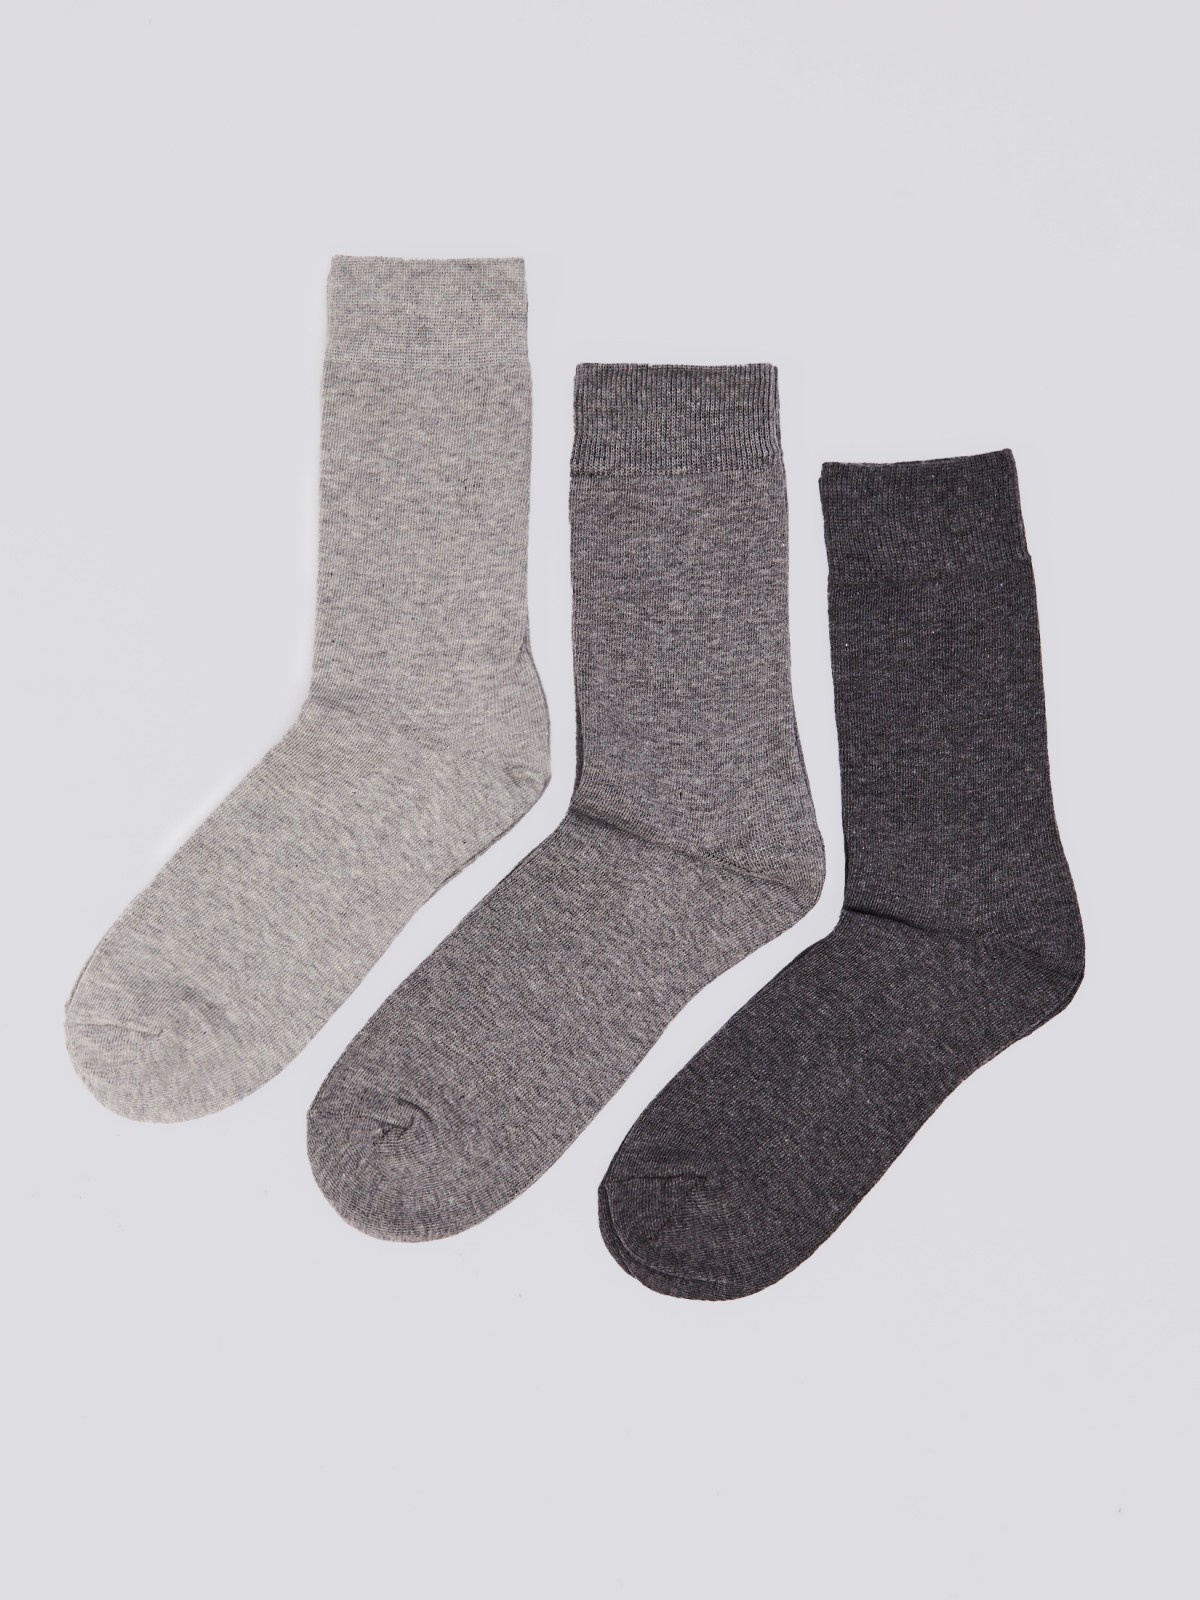 Набор носков (3 пары в комплекте) zolla 01411998J035, цвет серый, размер 25-27